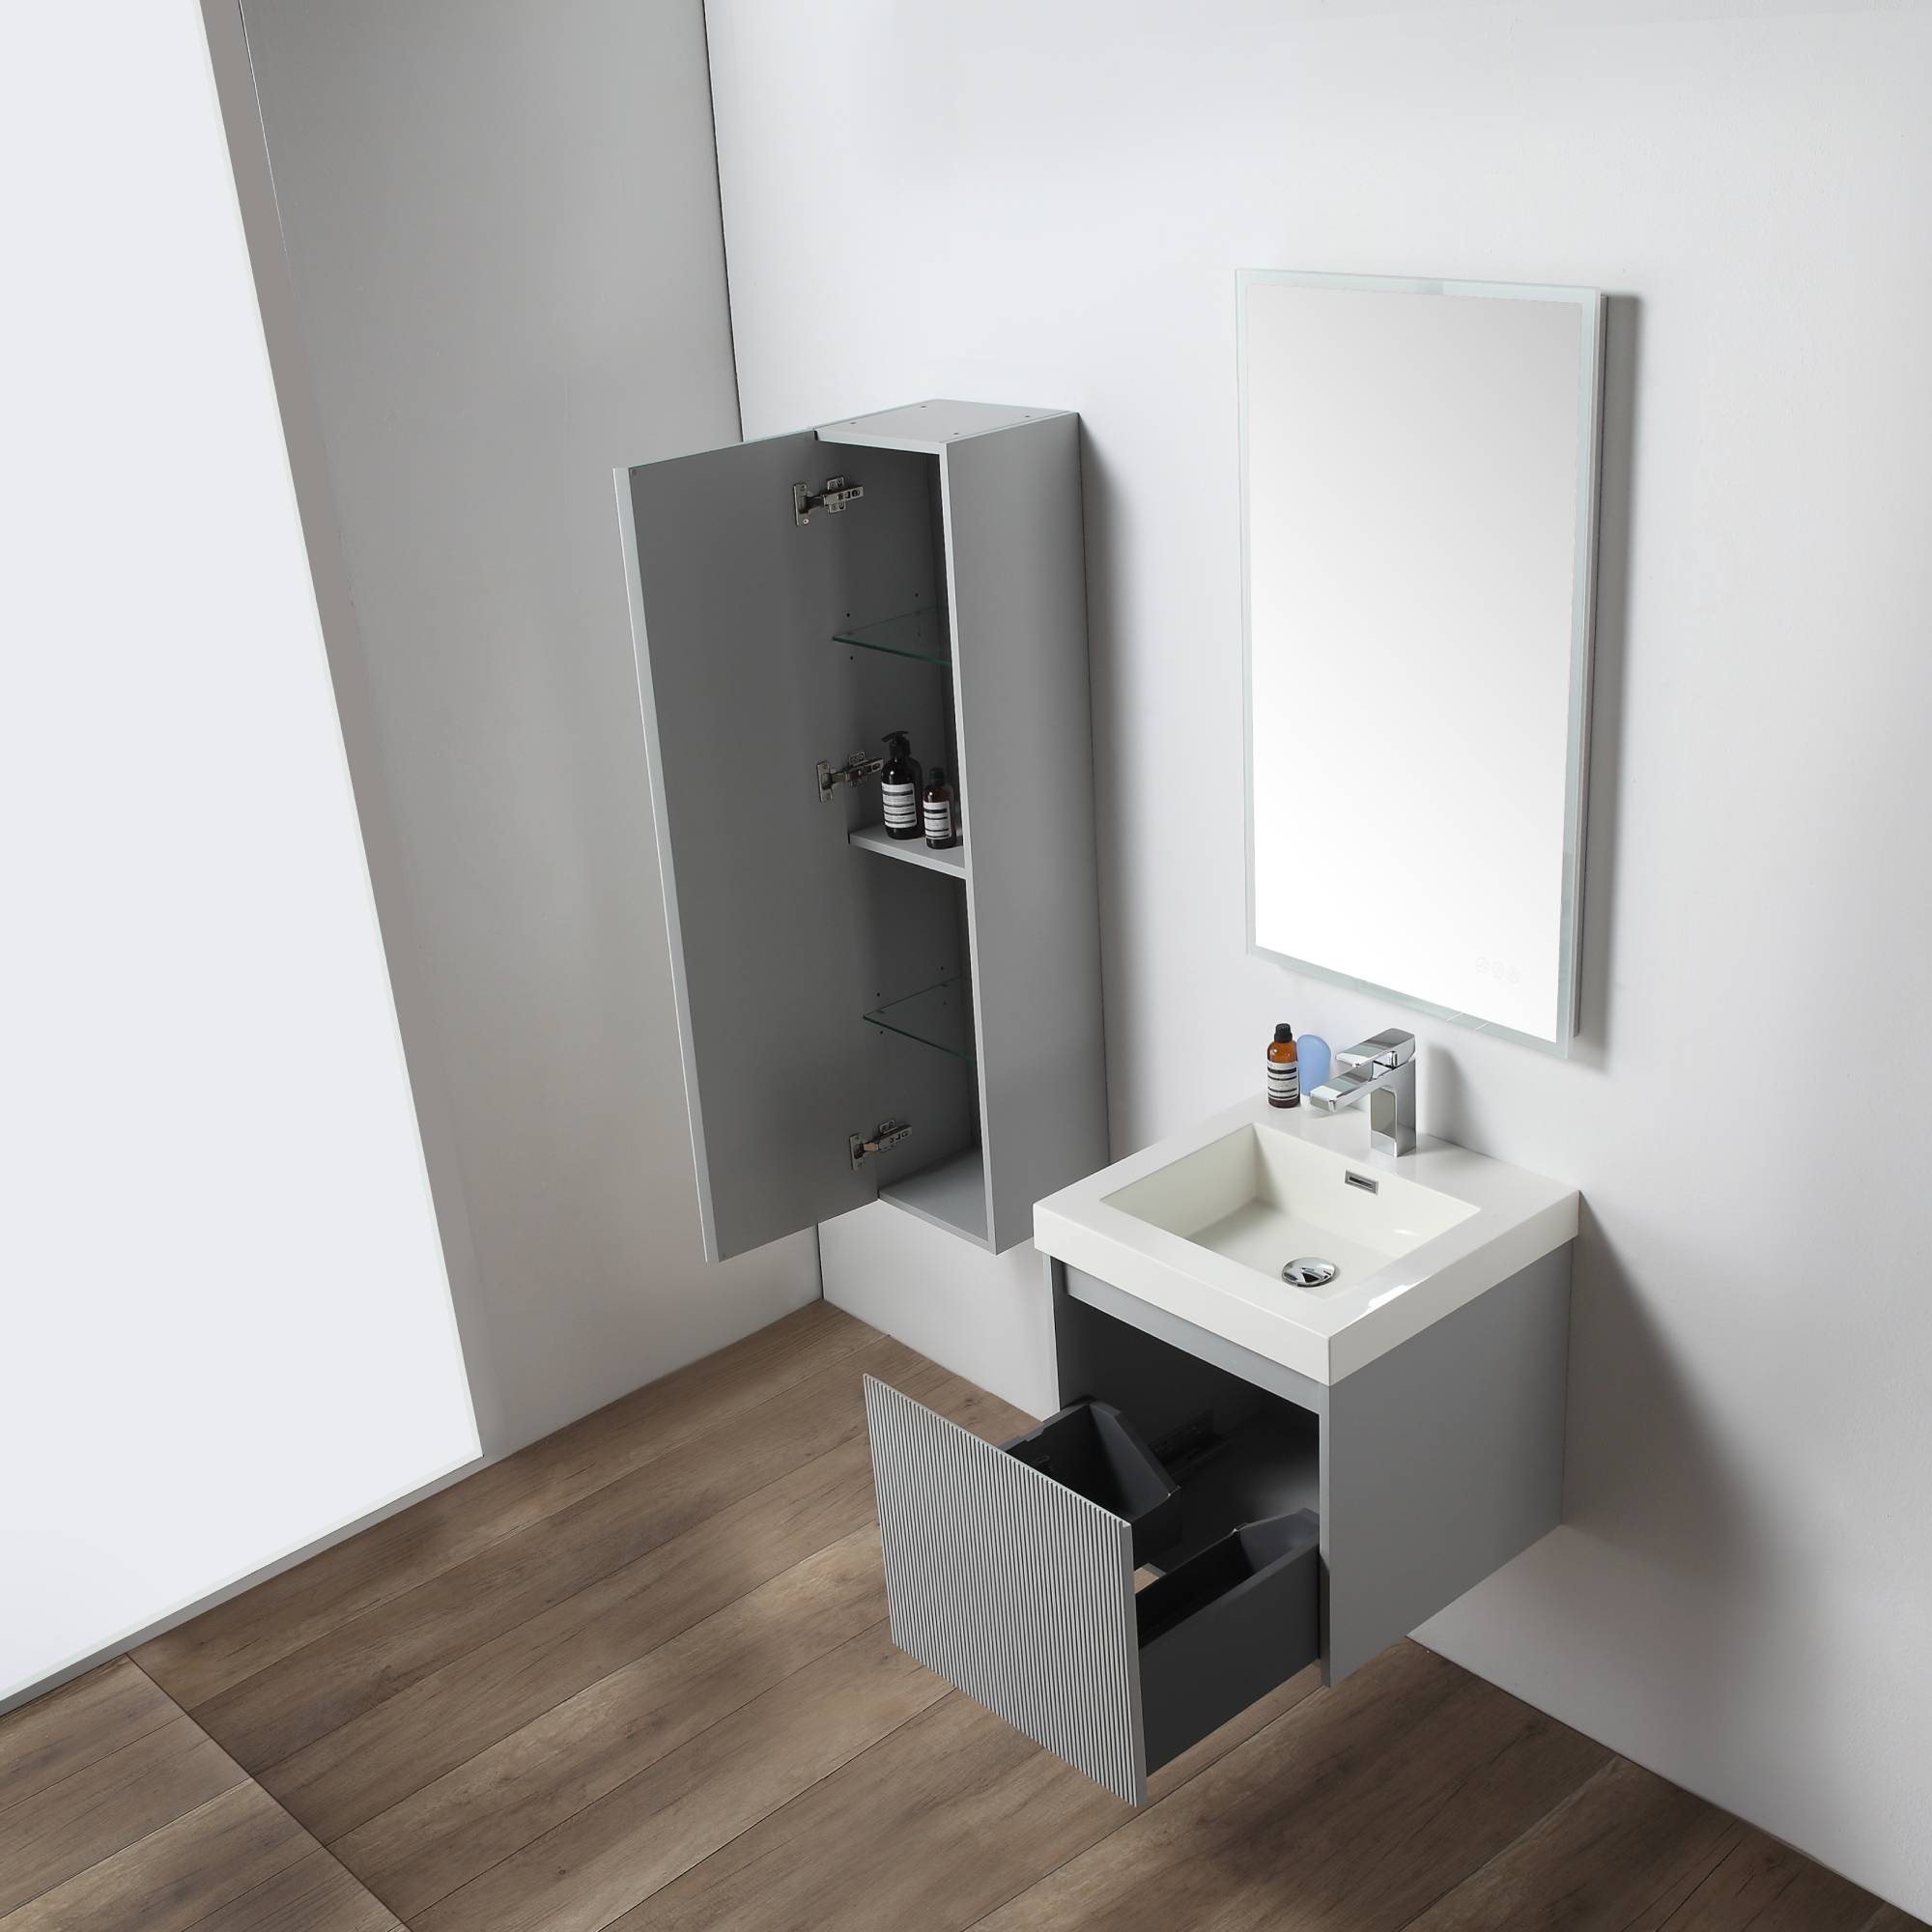 Positano 20" Bathroom Vanity  #size_20"  #color_light grey